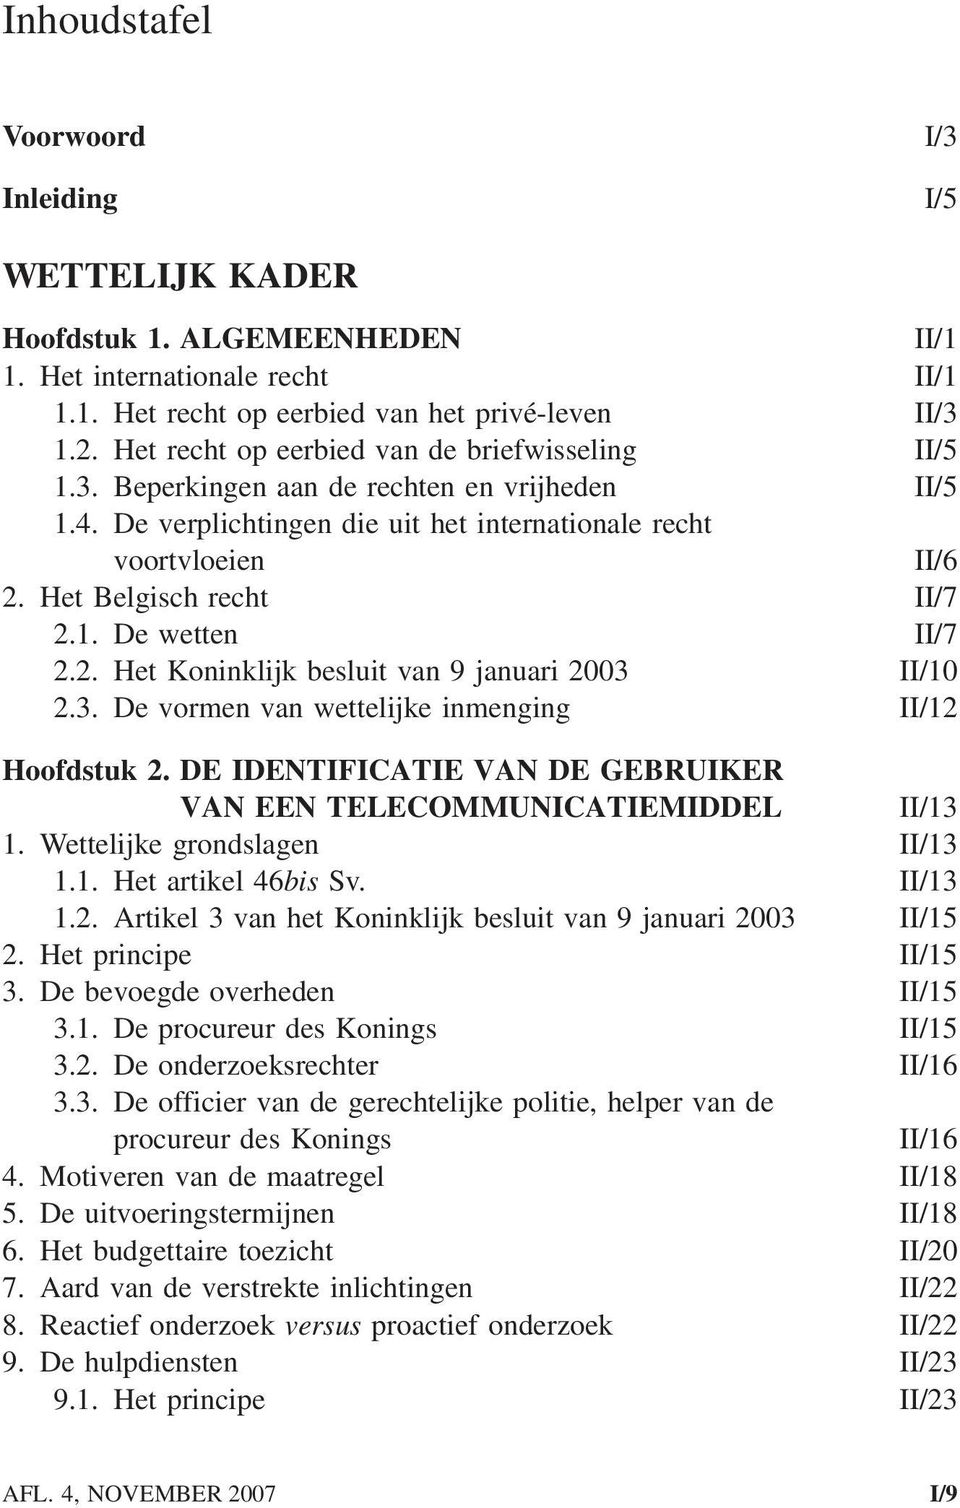 Het Belgisch recht II/7 2.1. De wetten II/7 2.2. Het Koninklijk besluit van 9 januari 2003 II/10 2.3. De vormen van wettelijke inmenging II/12 Hoofdstuk 2.